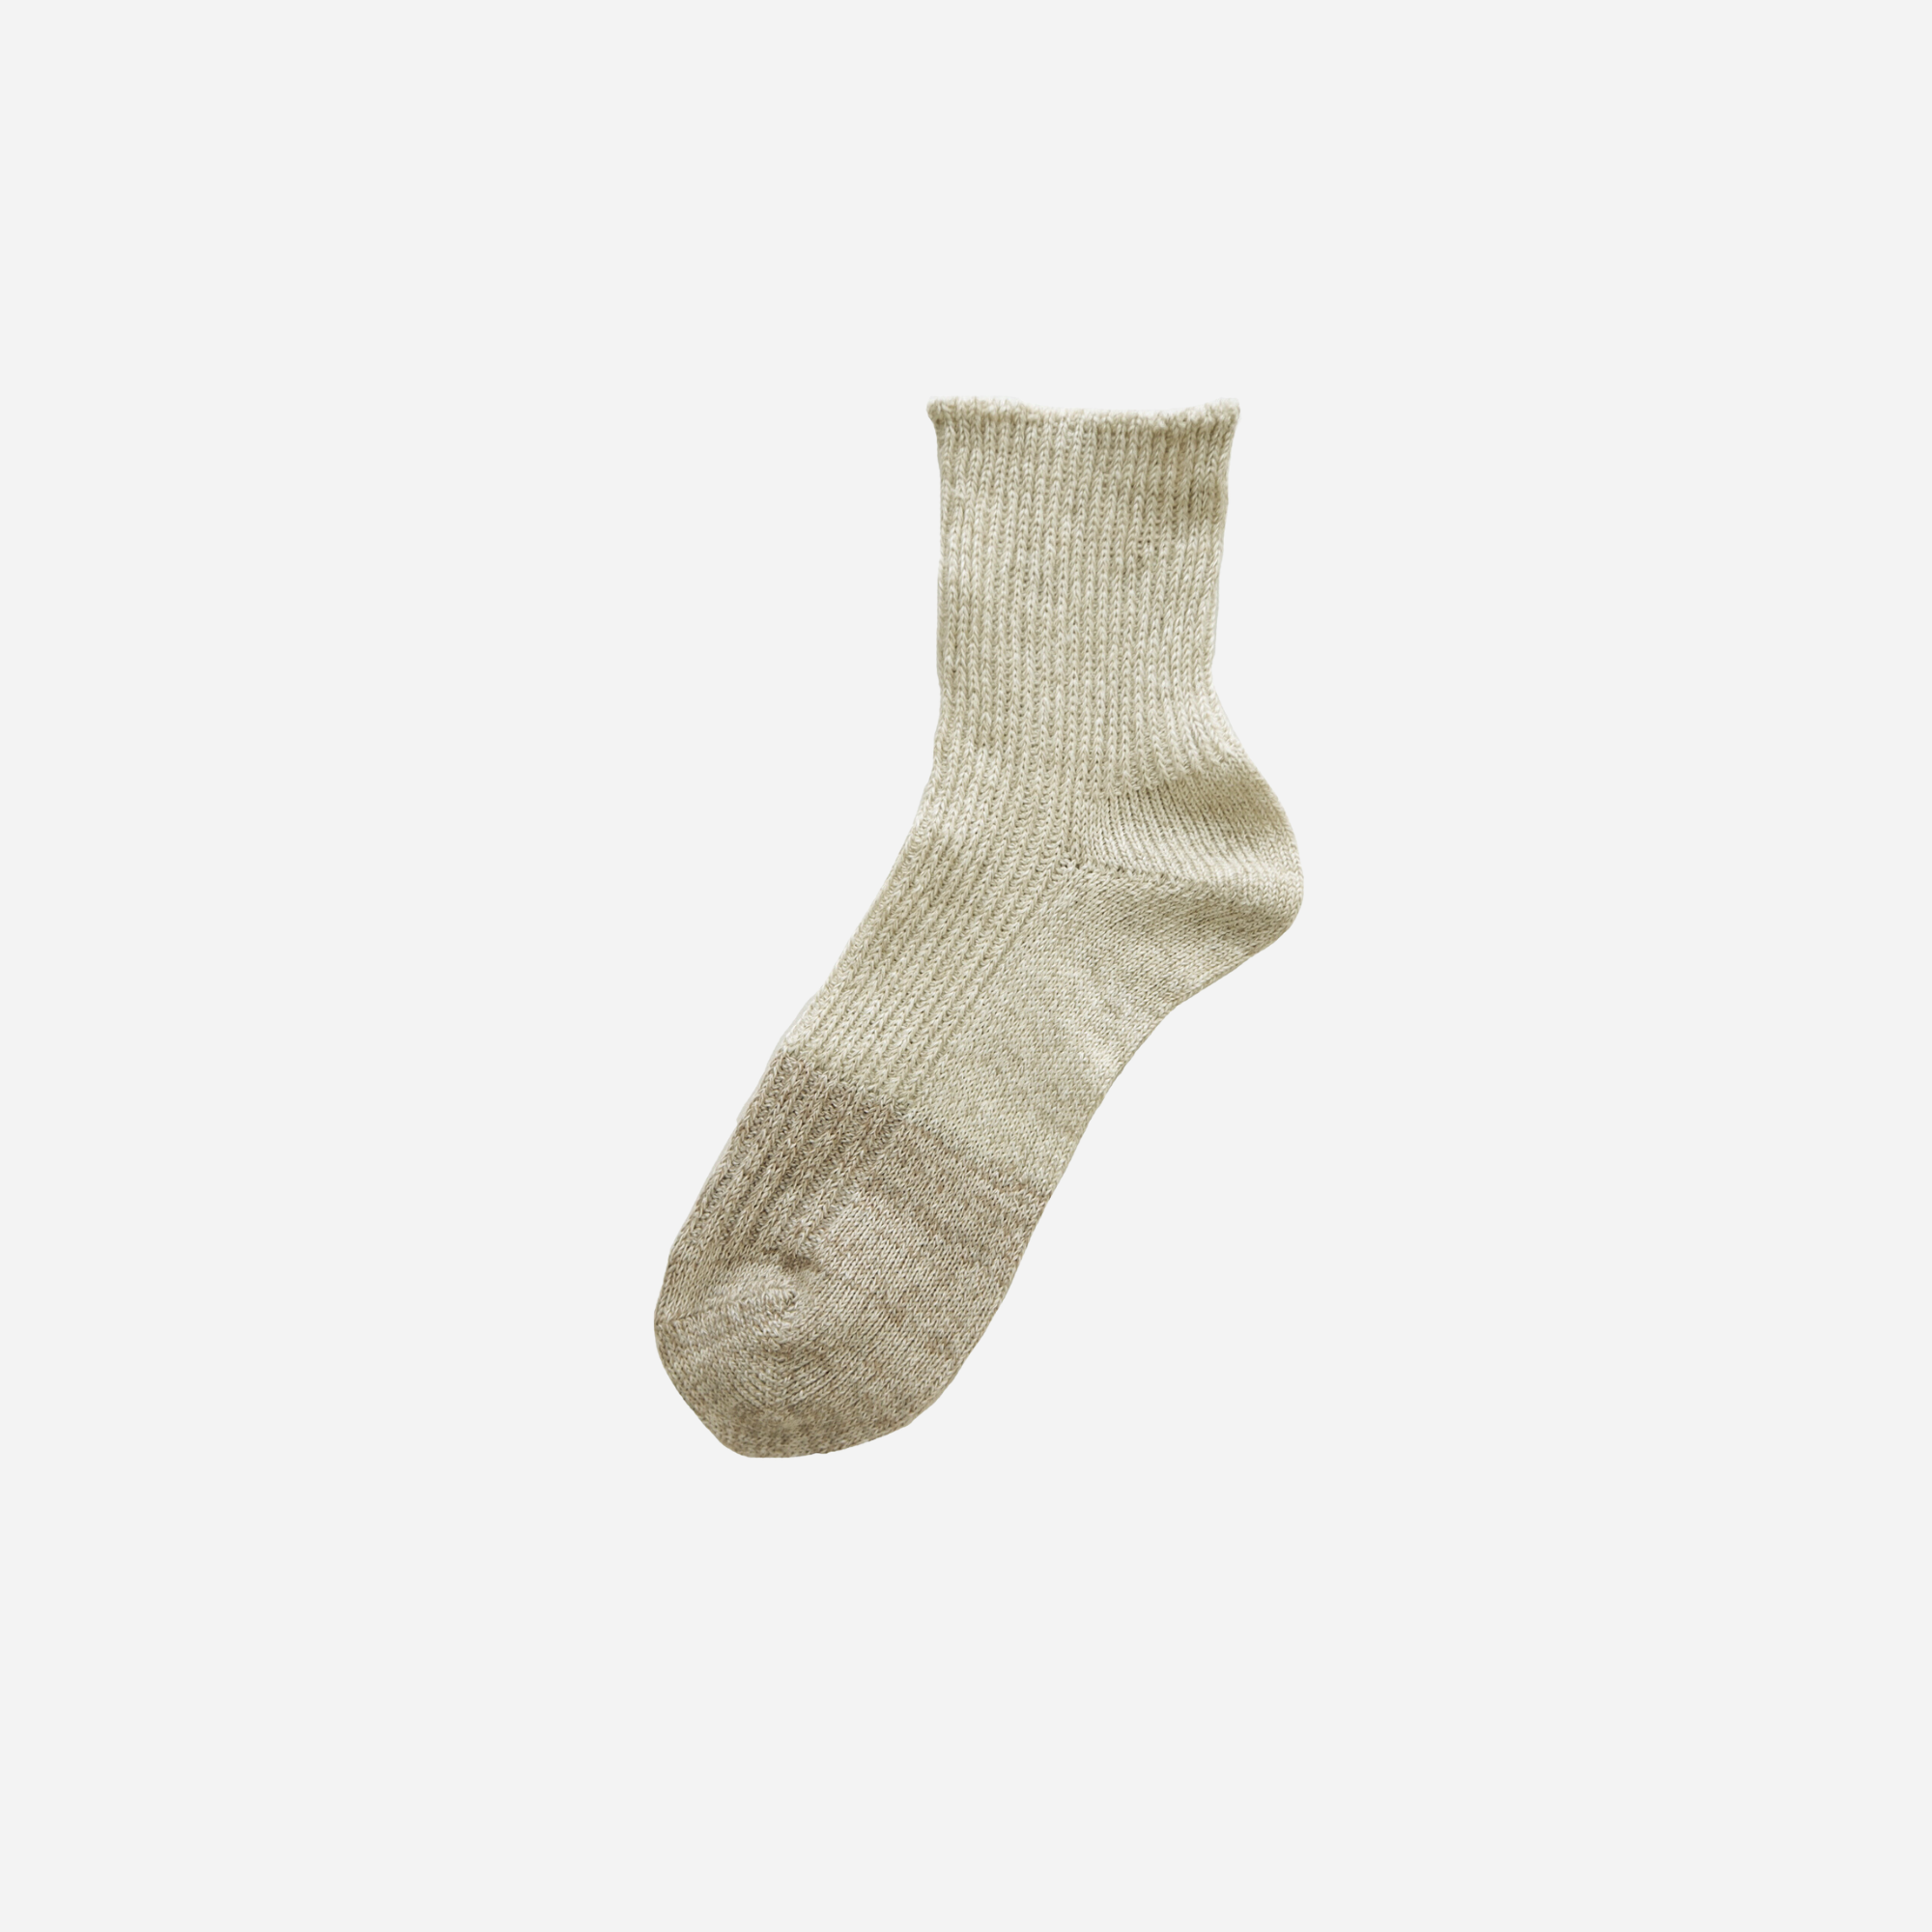 Mino washi socks